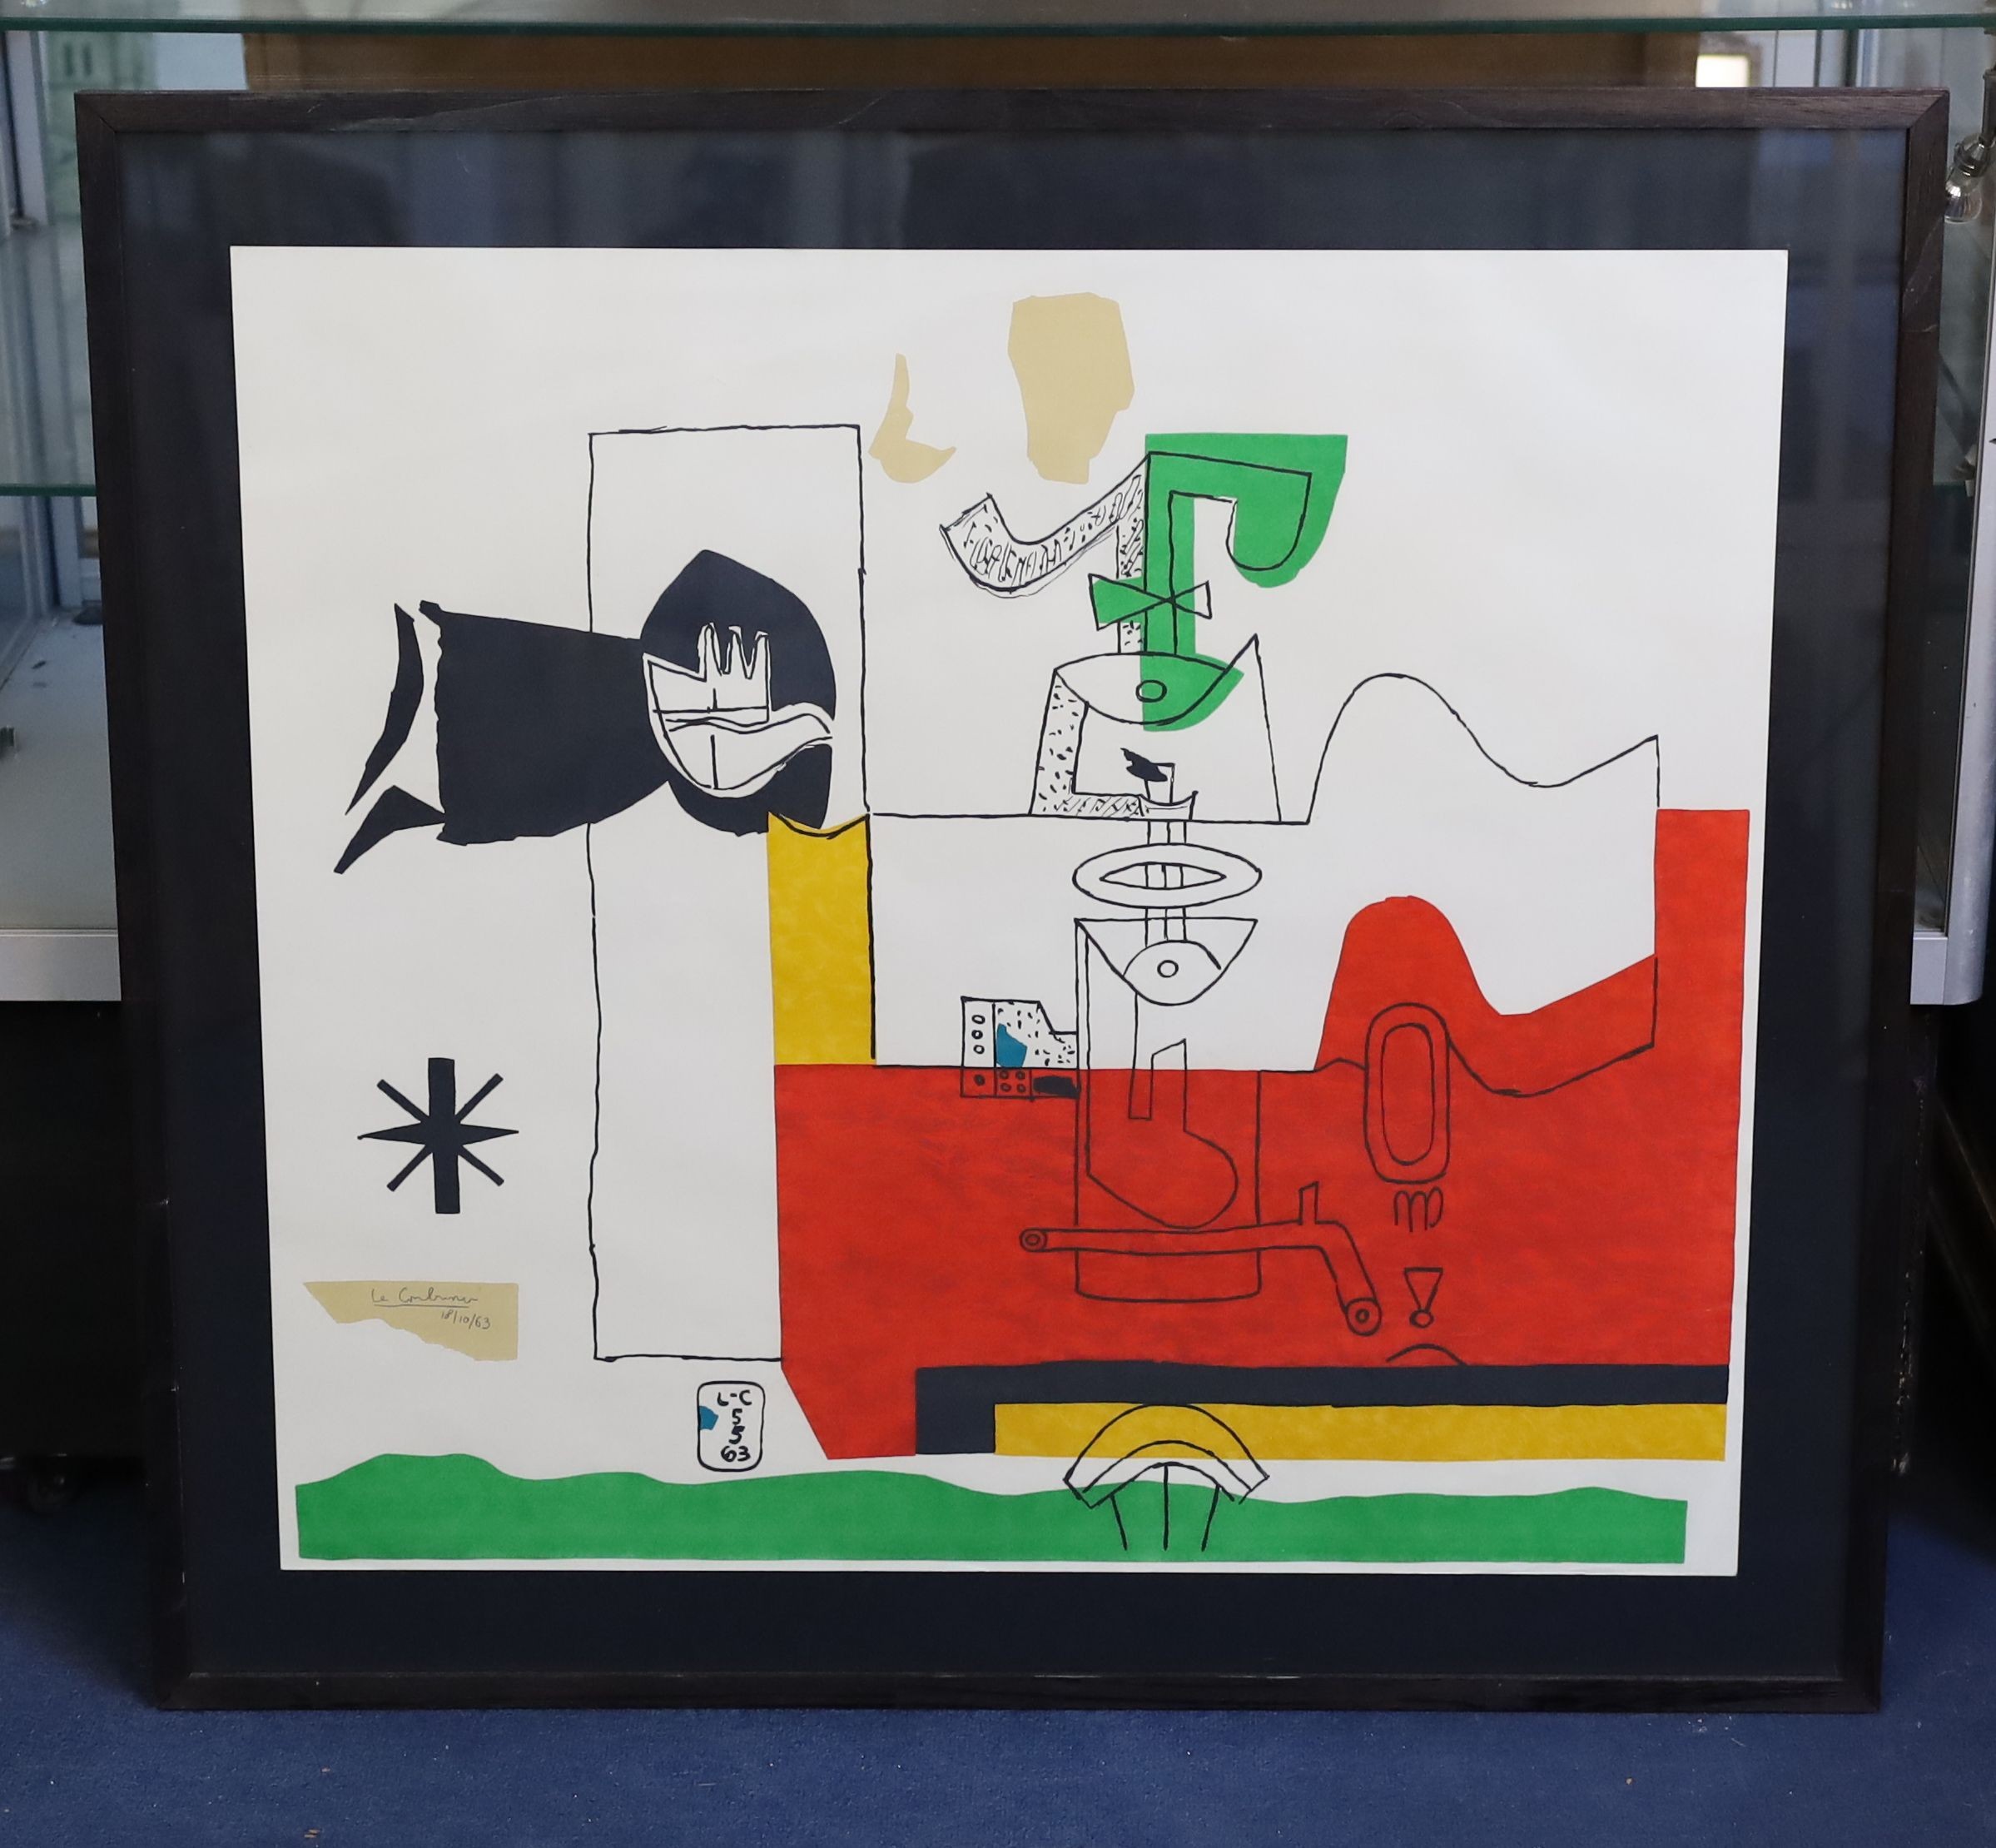 Jean Francois Le Corbusier (1887-1965), Totem 1963, colour lithograph, 73 x 80.5cm